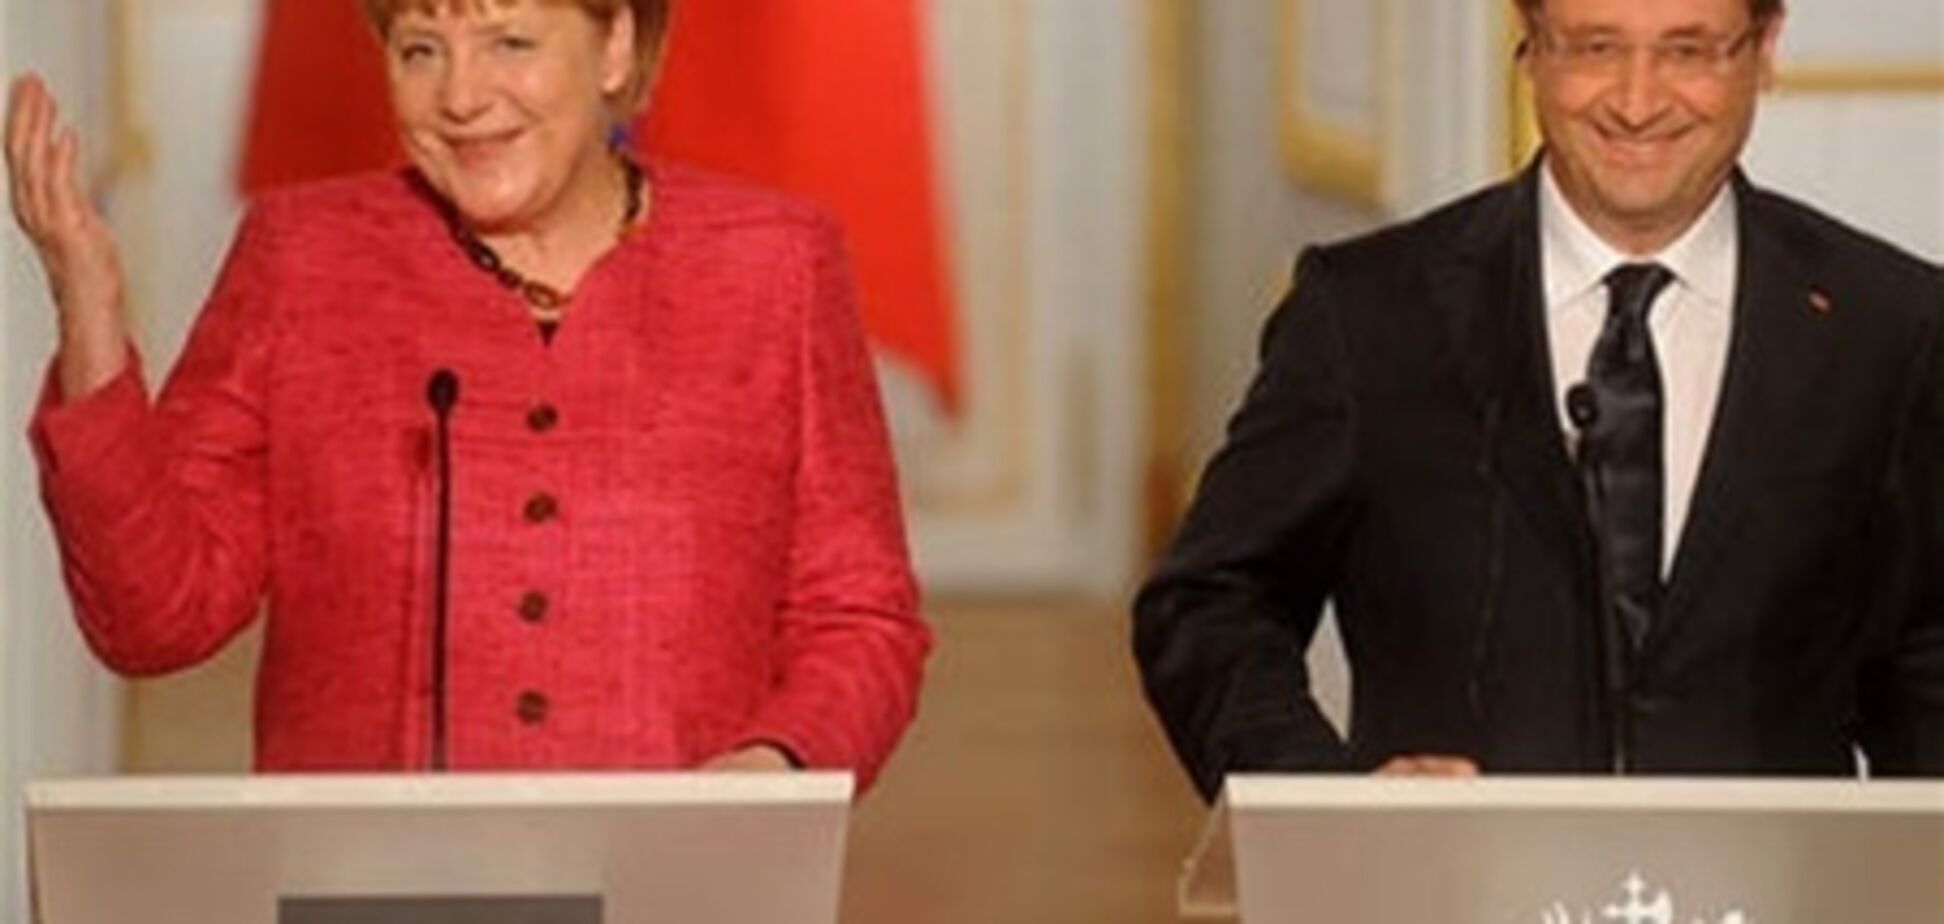 Меркель розсмішила Олланда, переплутавши його з Міттераном